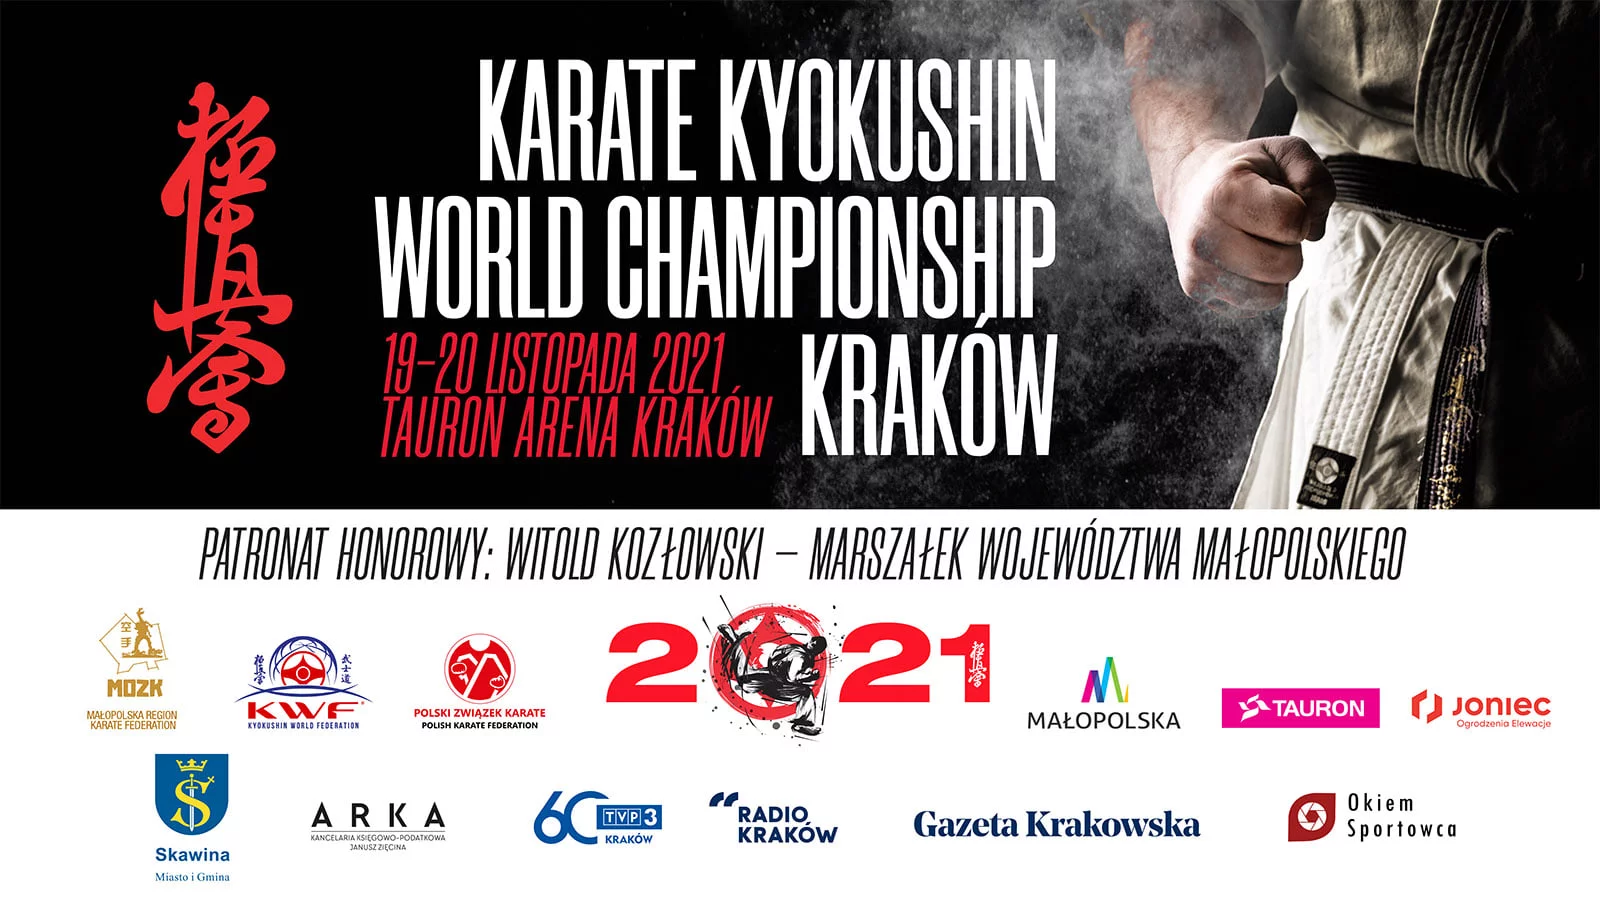 Firma JONIEC® sponsorem Mistrzostw Świata Karate Kyokushin.